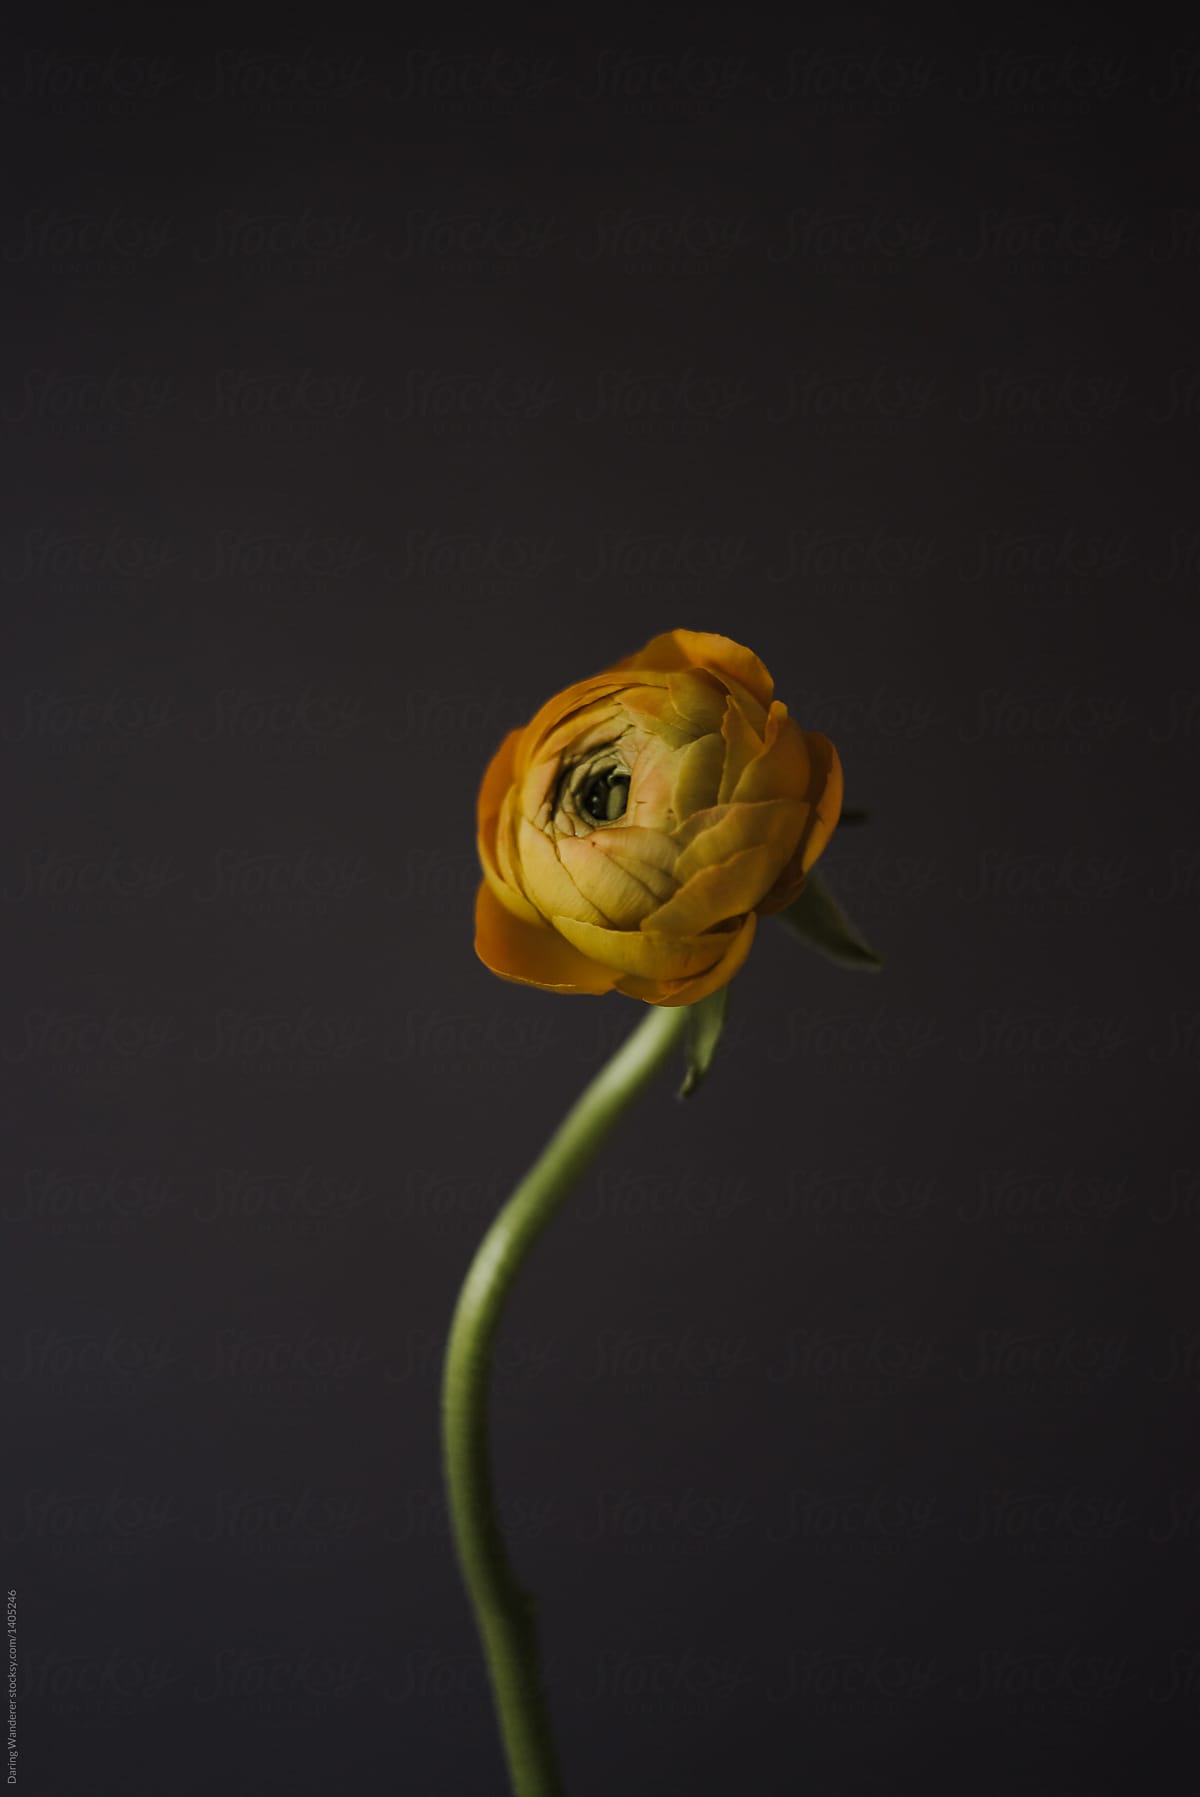 Single orange ranunculus flower with dark background